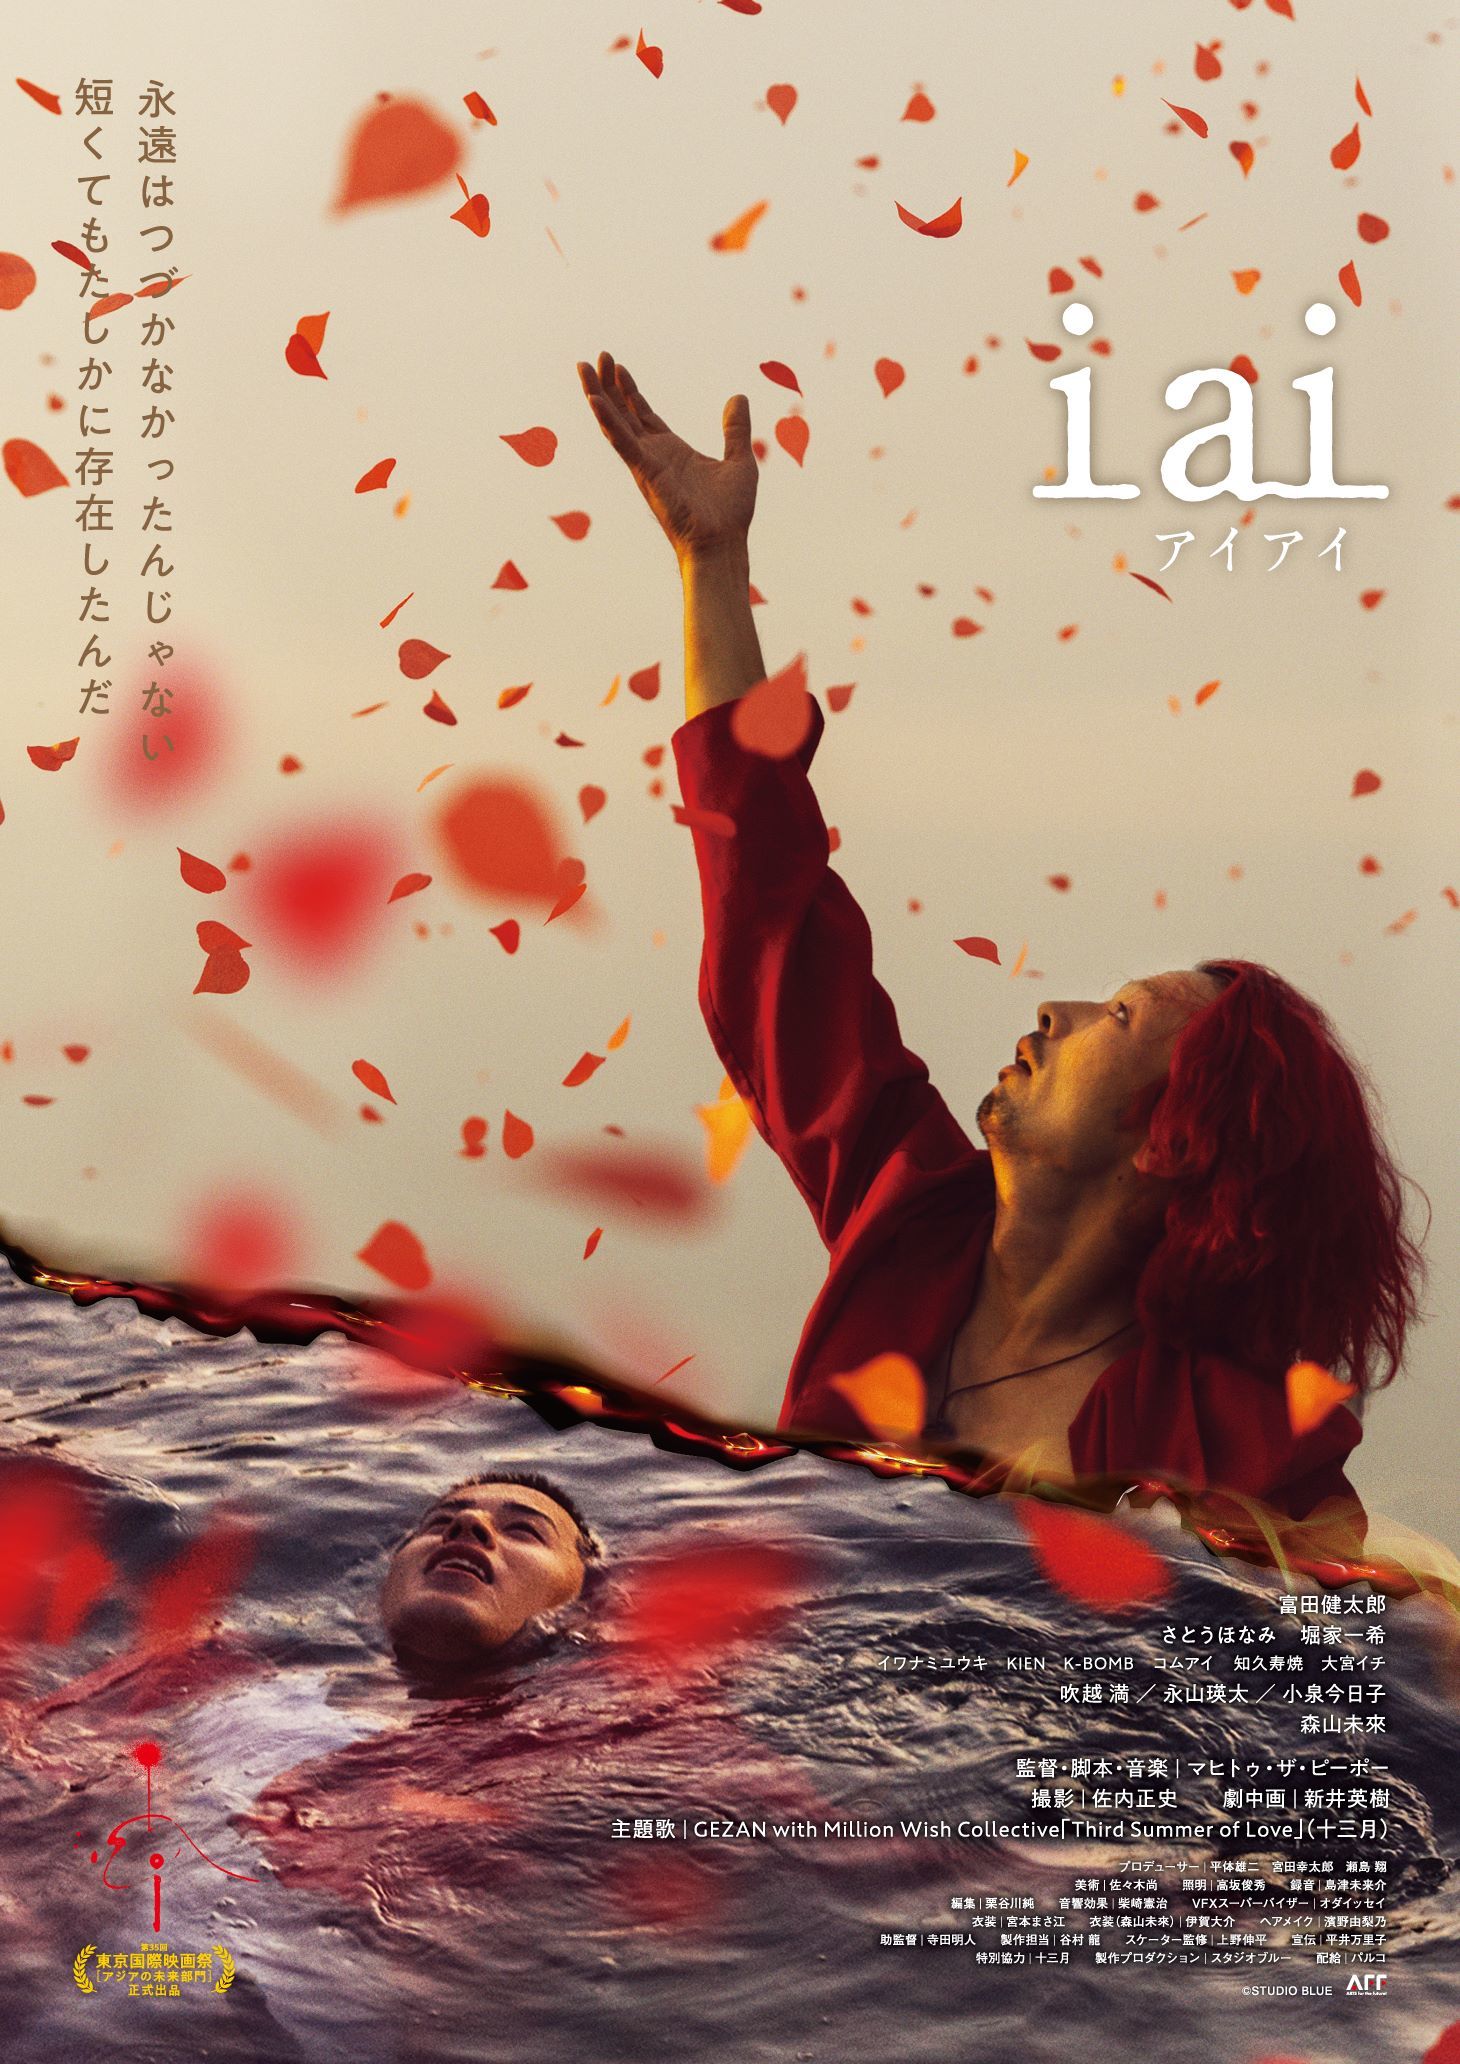 マヒトゥ・ザ・ピーポーが監督務めた青春映画『i ai』ポスター 